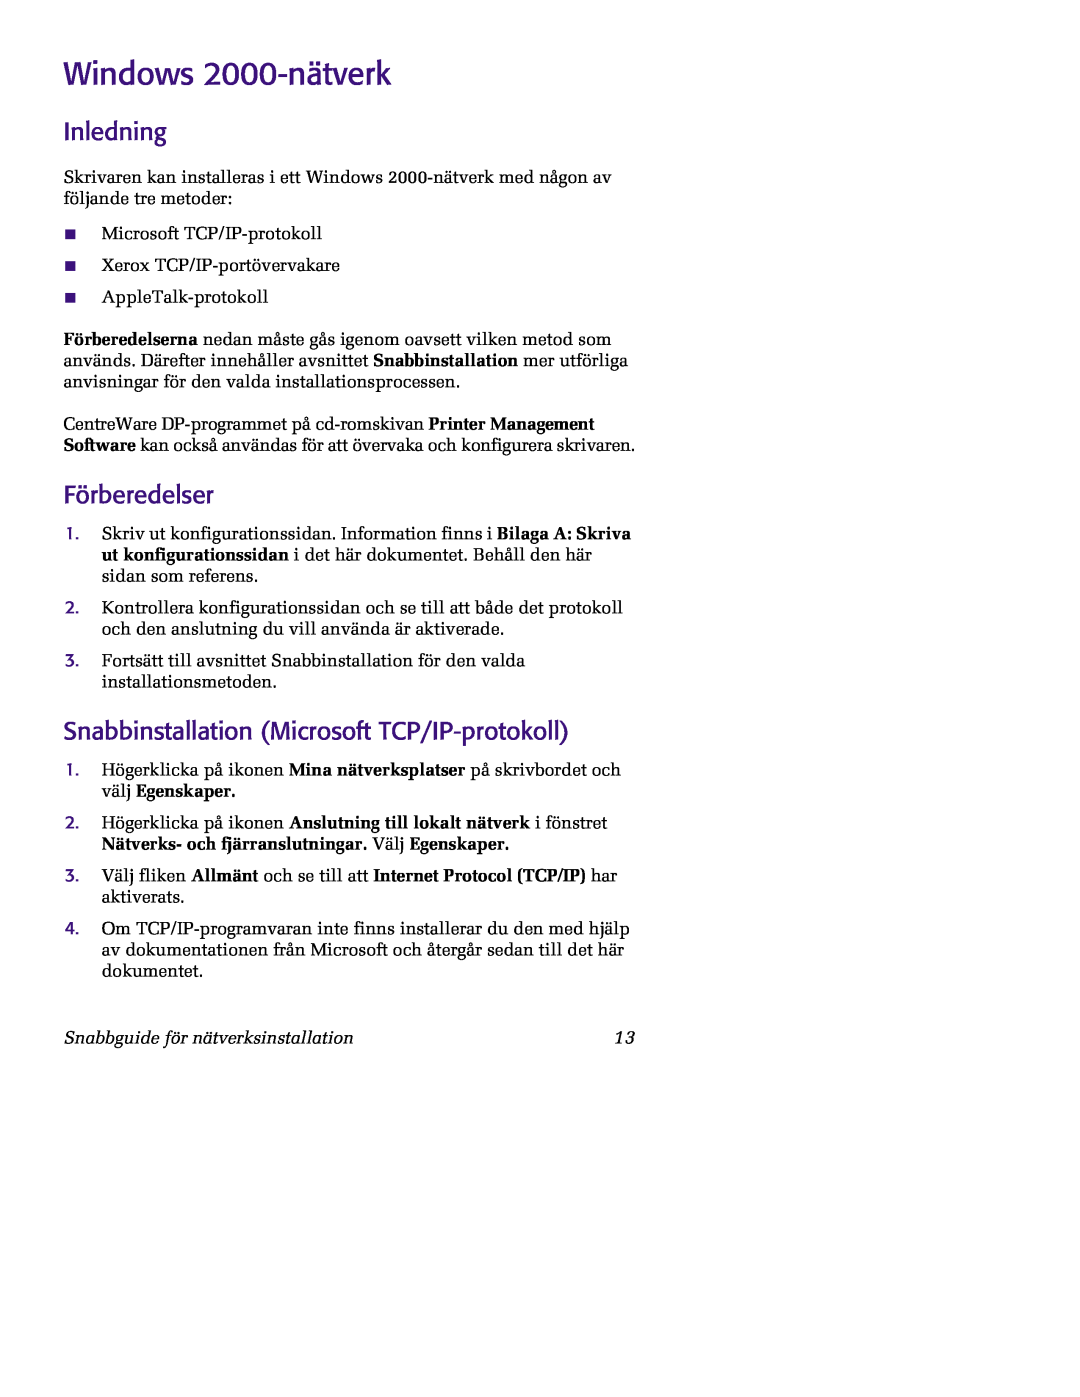 Xerox 5400 manual Windows 2000-nätverk, Inledning, Förberedelser, Snabbinstallation Microsoft TCP/IP-protokoll 